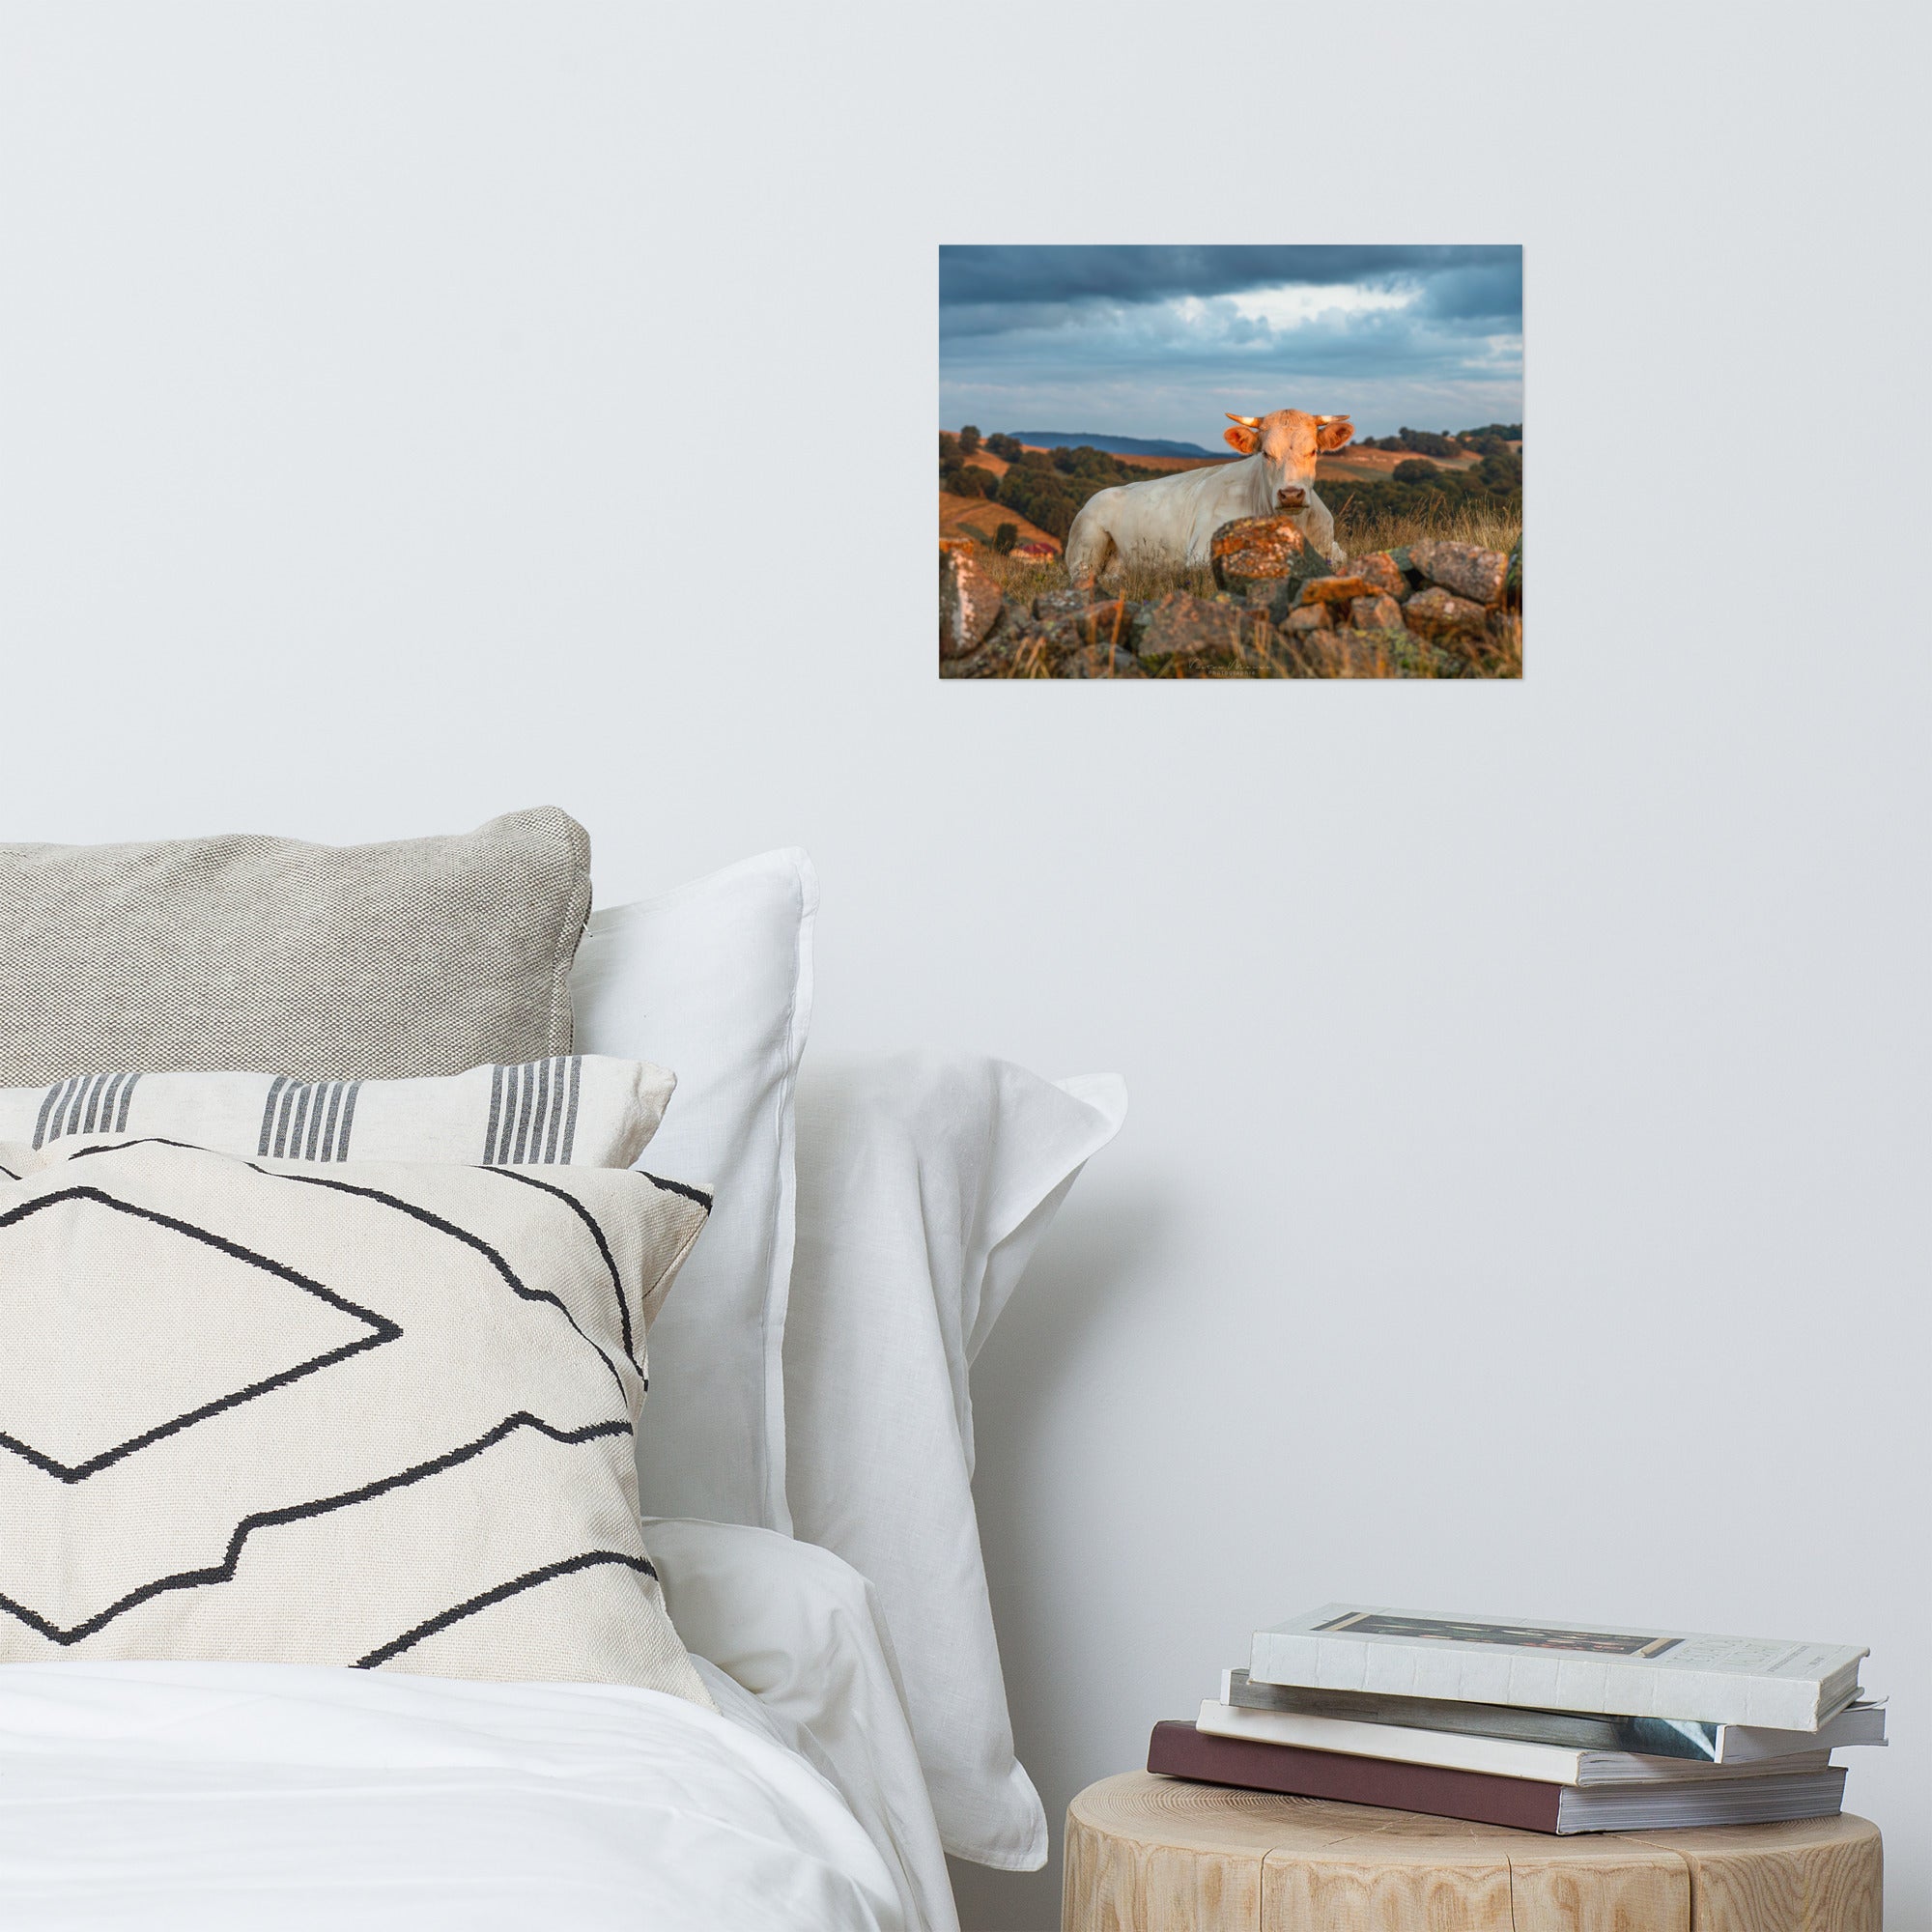 Poster 'Vache à l'Aube' illustrant une vache Charolaise entourée d'herbes hautes avec un fond montagneux au lever du soleil, photographié par Victor Marre.